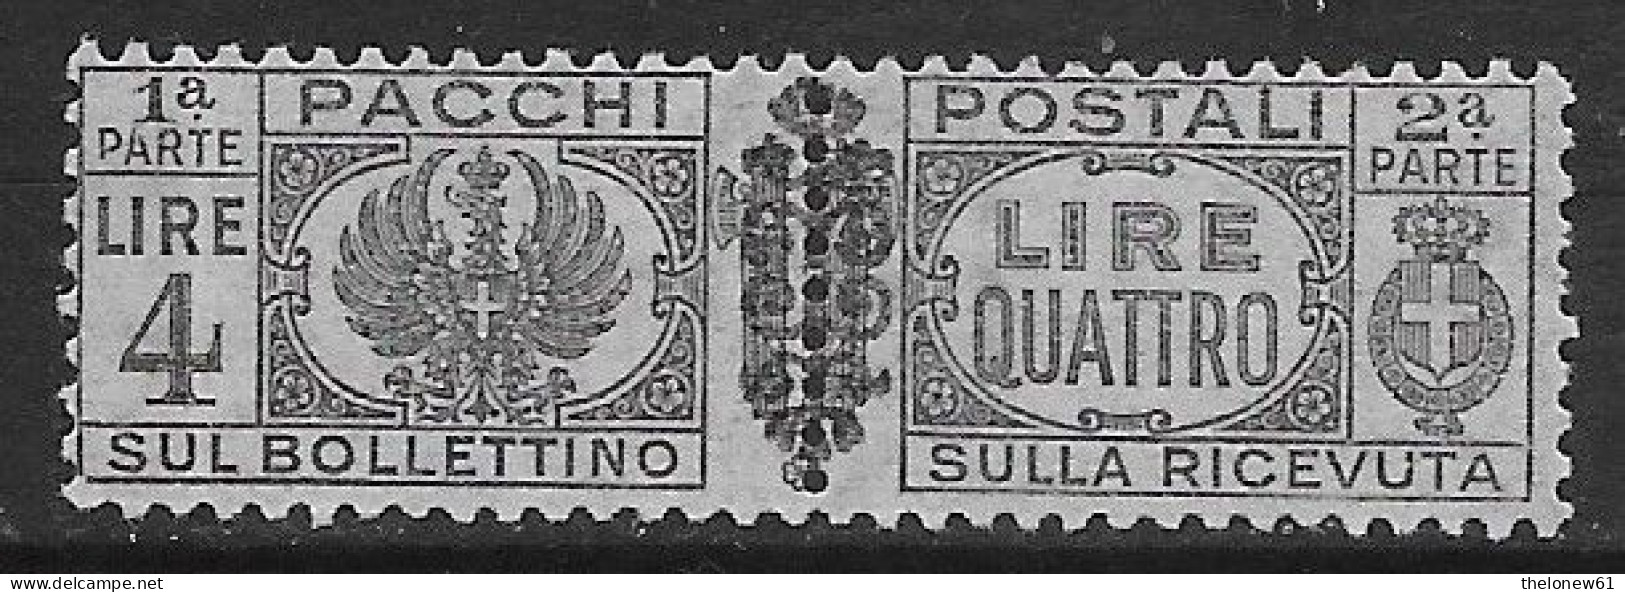 Italia Italy 1945 Luogotenenza Pacchi Postali Con Fregi L4 Sa N.PP57 Nuovo MH * - Colis-postaux